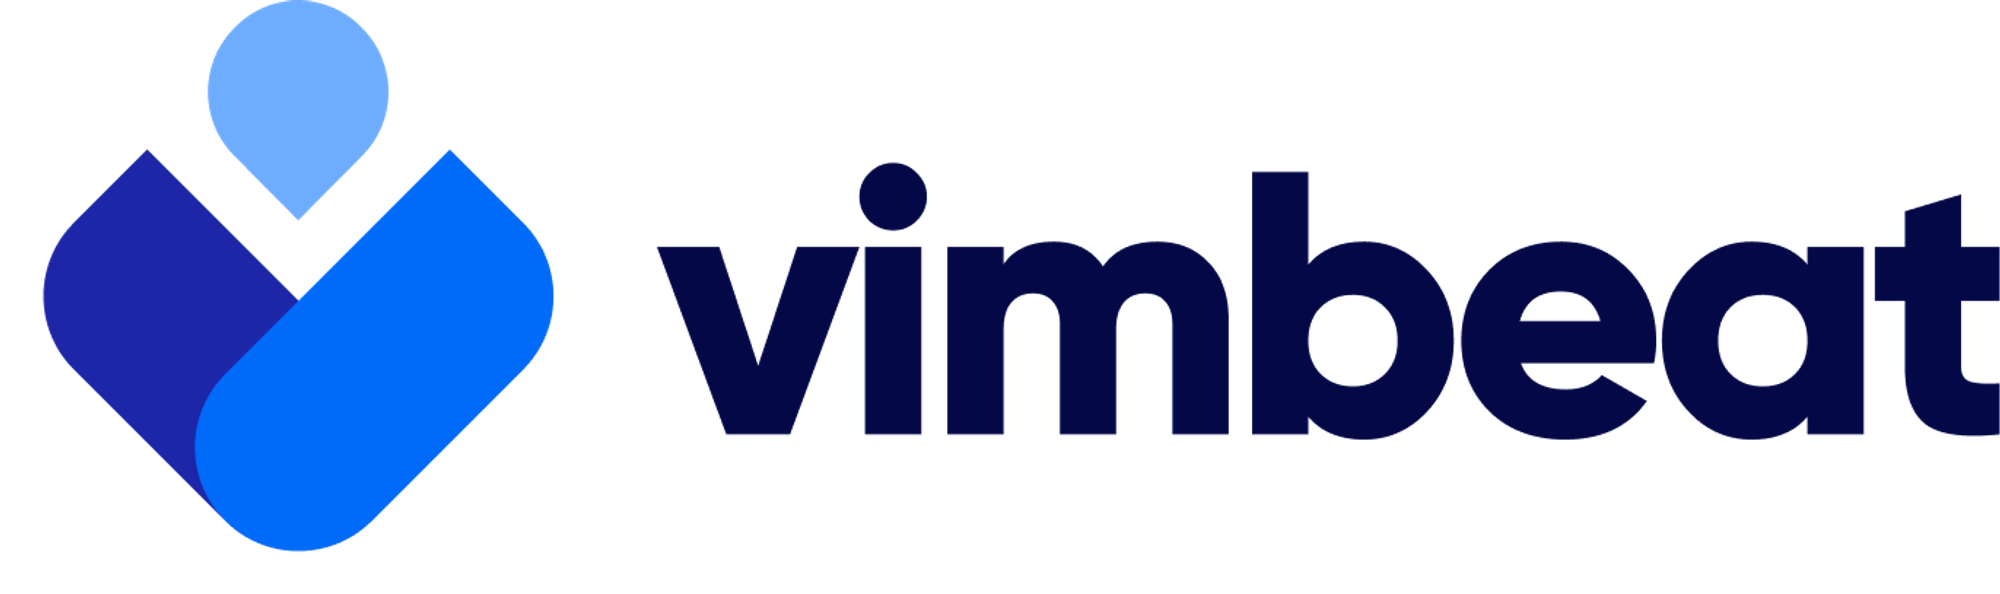 Modern logo design for vimbeat.com